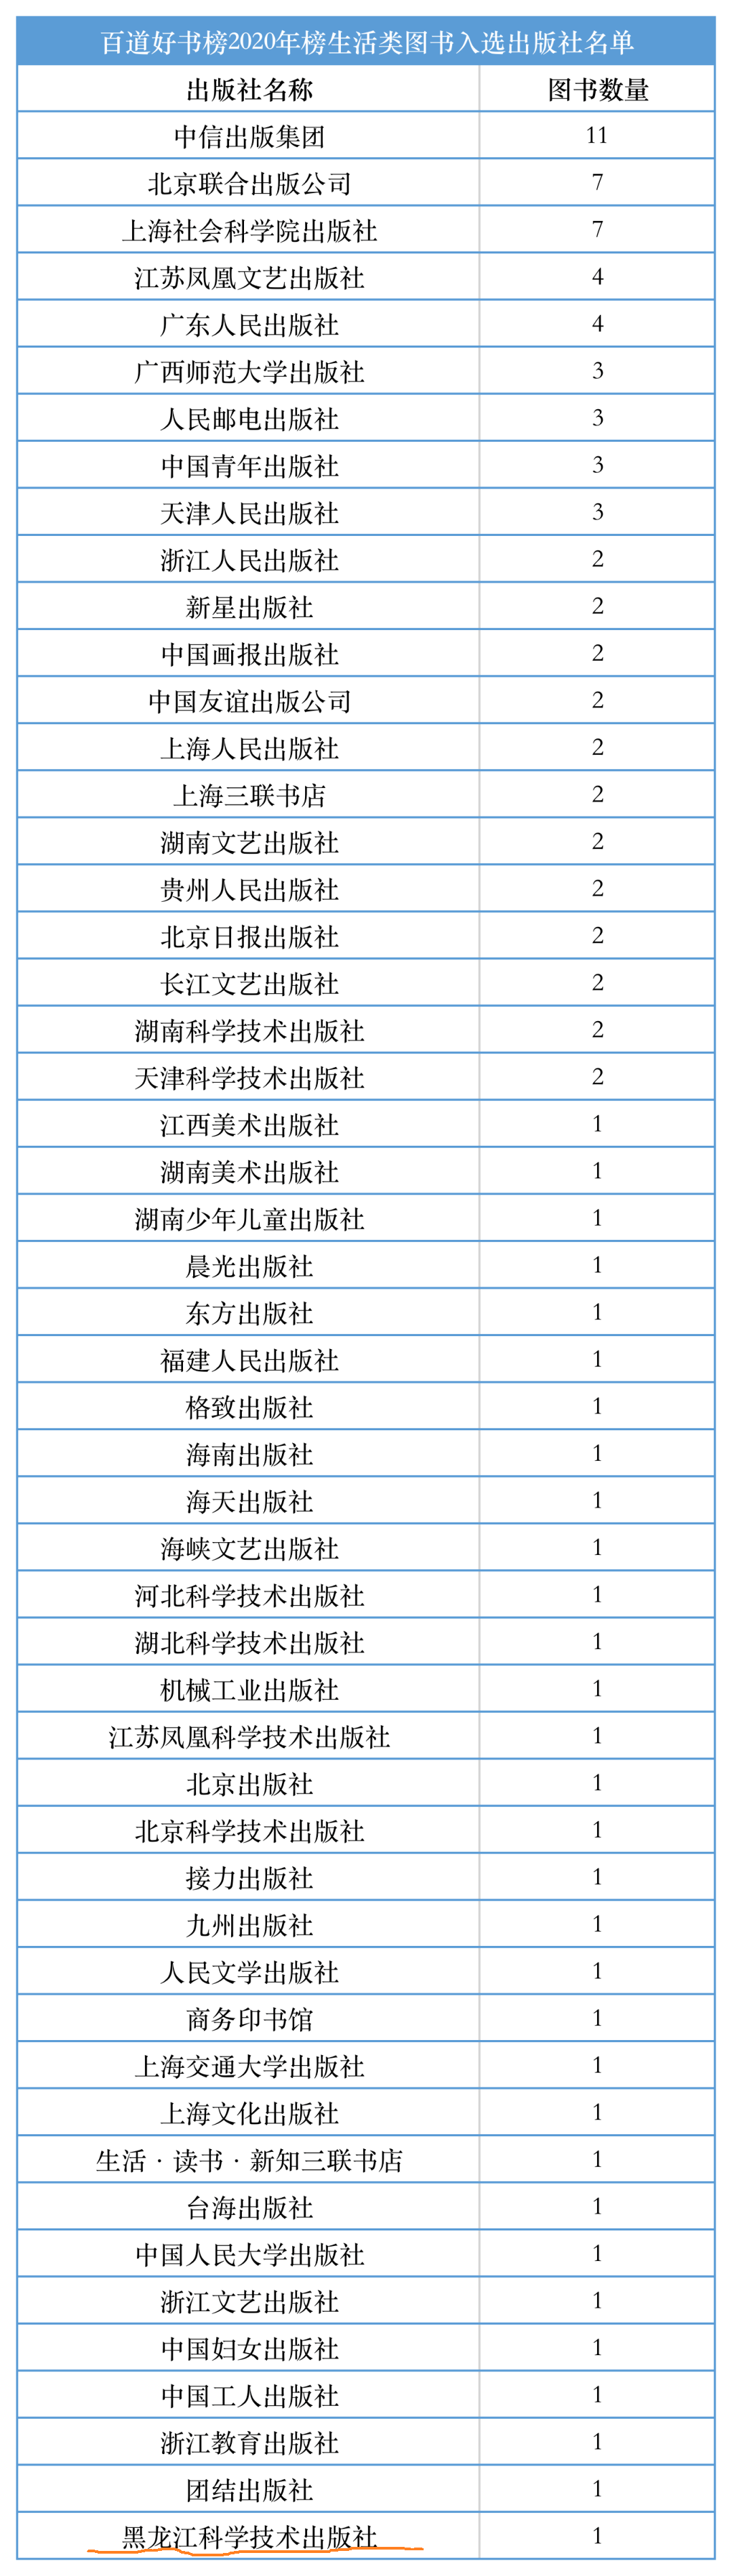 黑龙江科技社图书入选百道好书榜2020年榜生活类TOP100